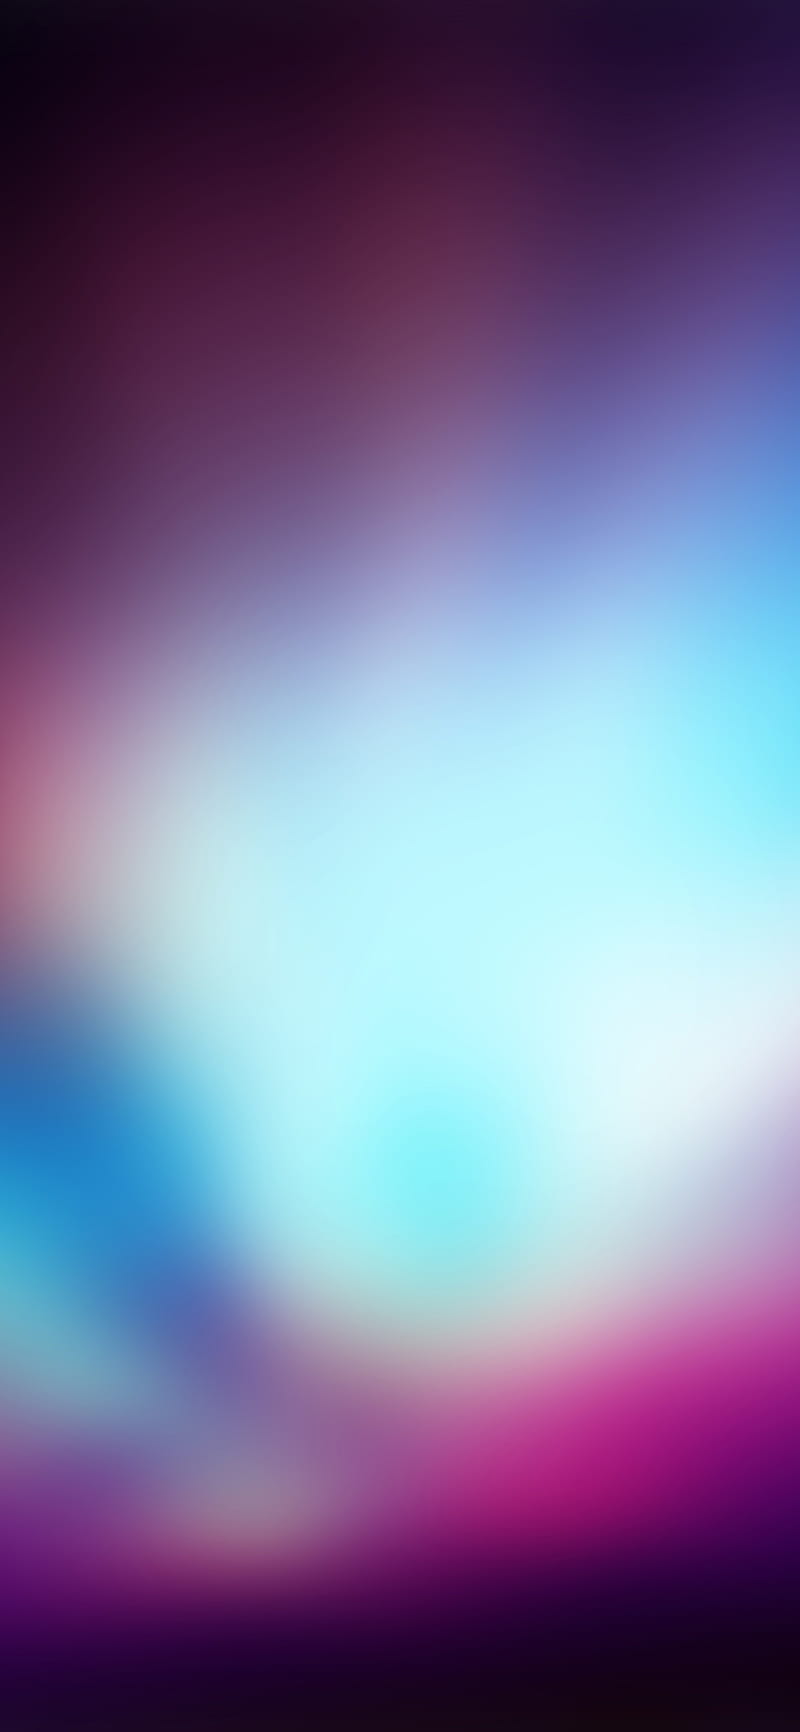 iPhone11 . os background dark gradation blur, Blurred, HD phone wallpaper